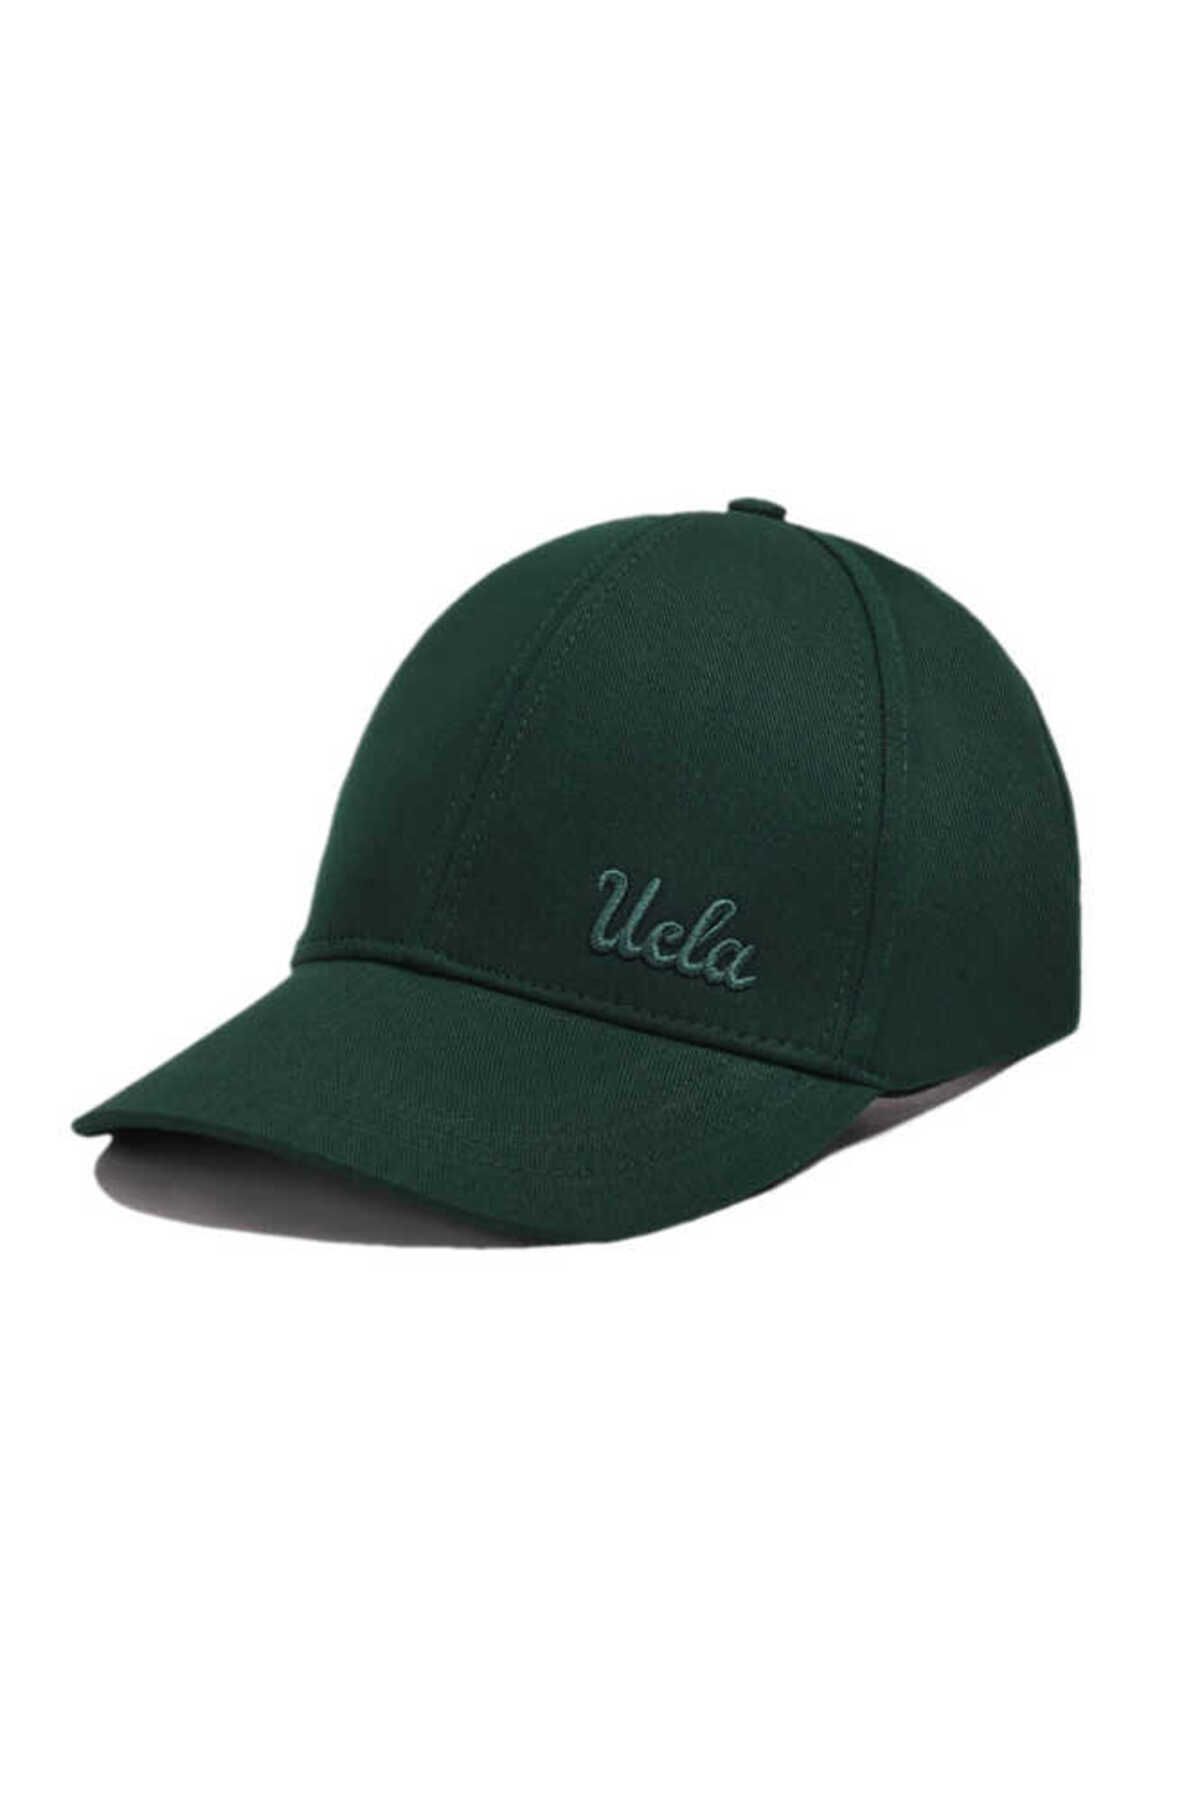 Ucla NEO Yeşil Baseball Cap Nakışlı Unisex Şapka